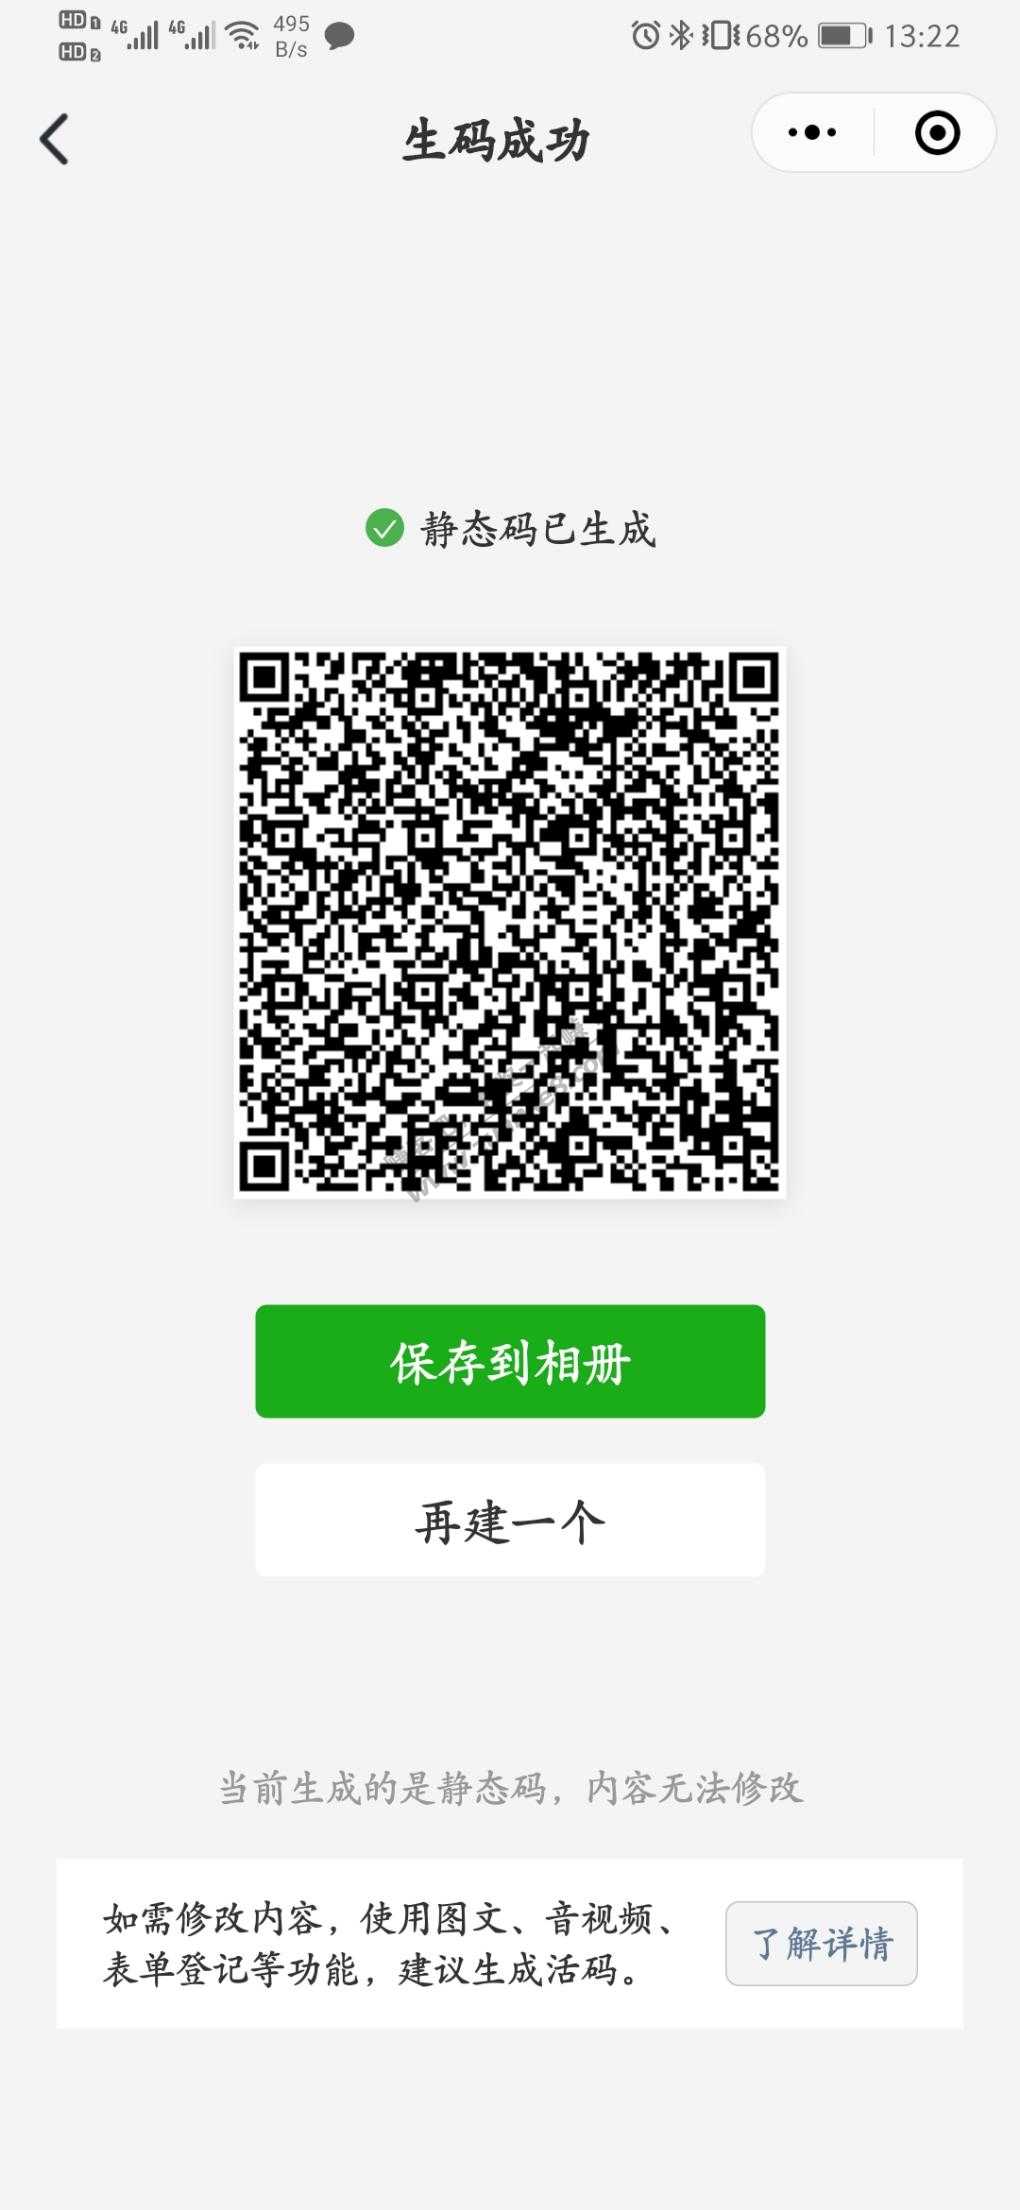 招商达标5万-30元商城券-惠小助(52huixz.com)